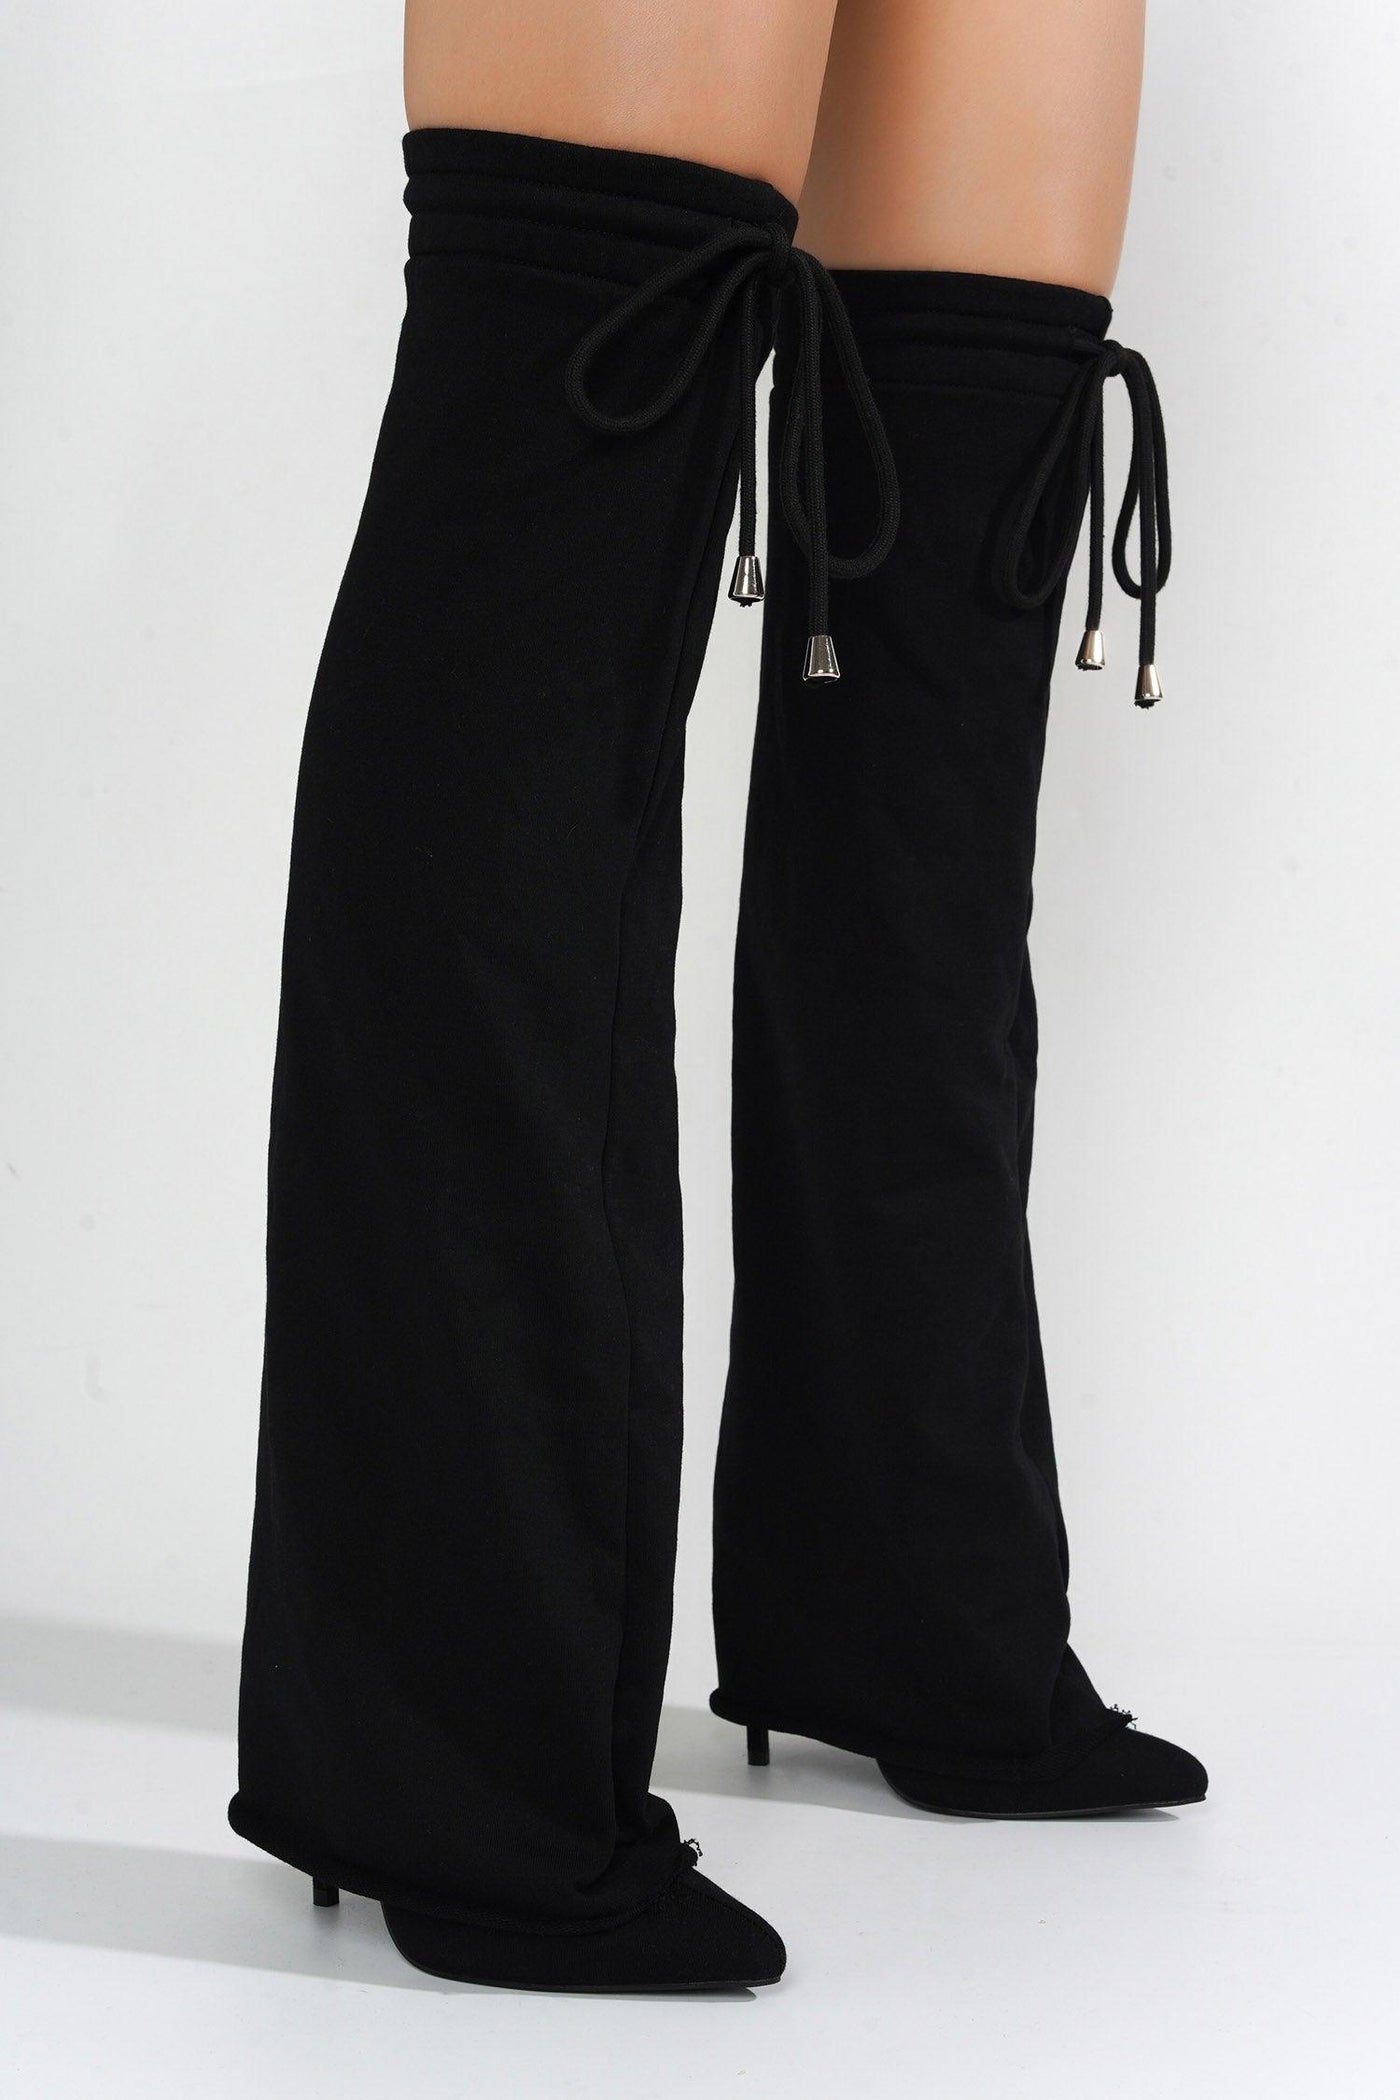 CARIO - BLACK - AMIClubwear